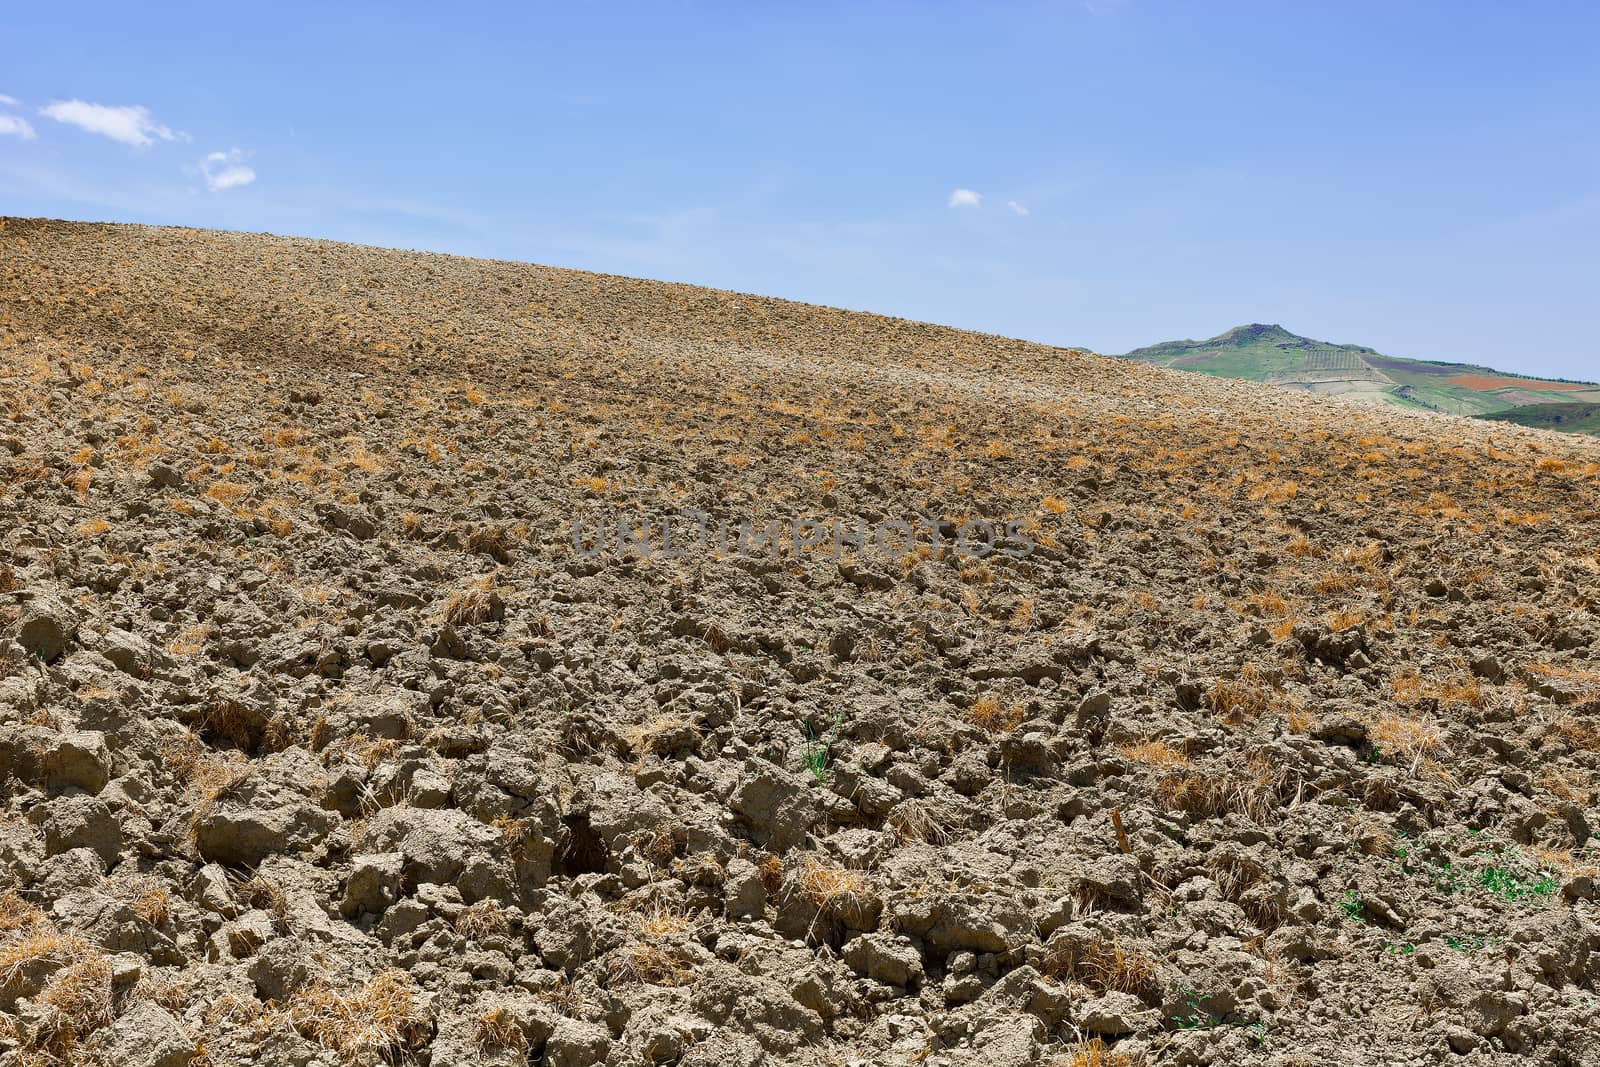 Plowed Fields by gkuna